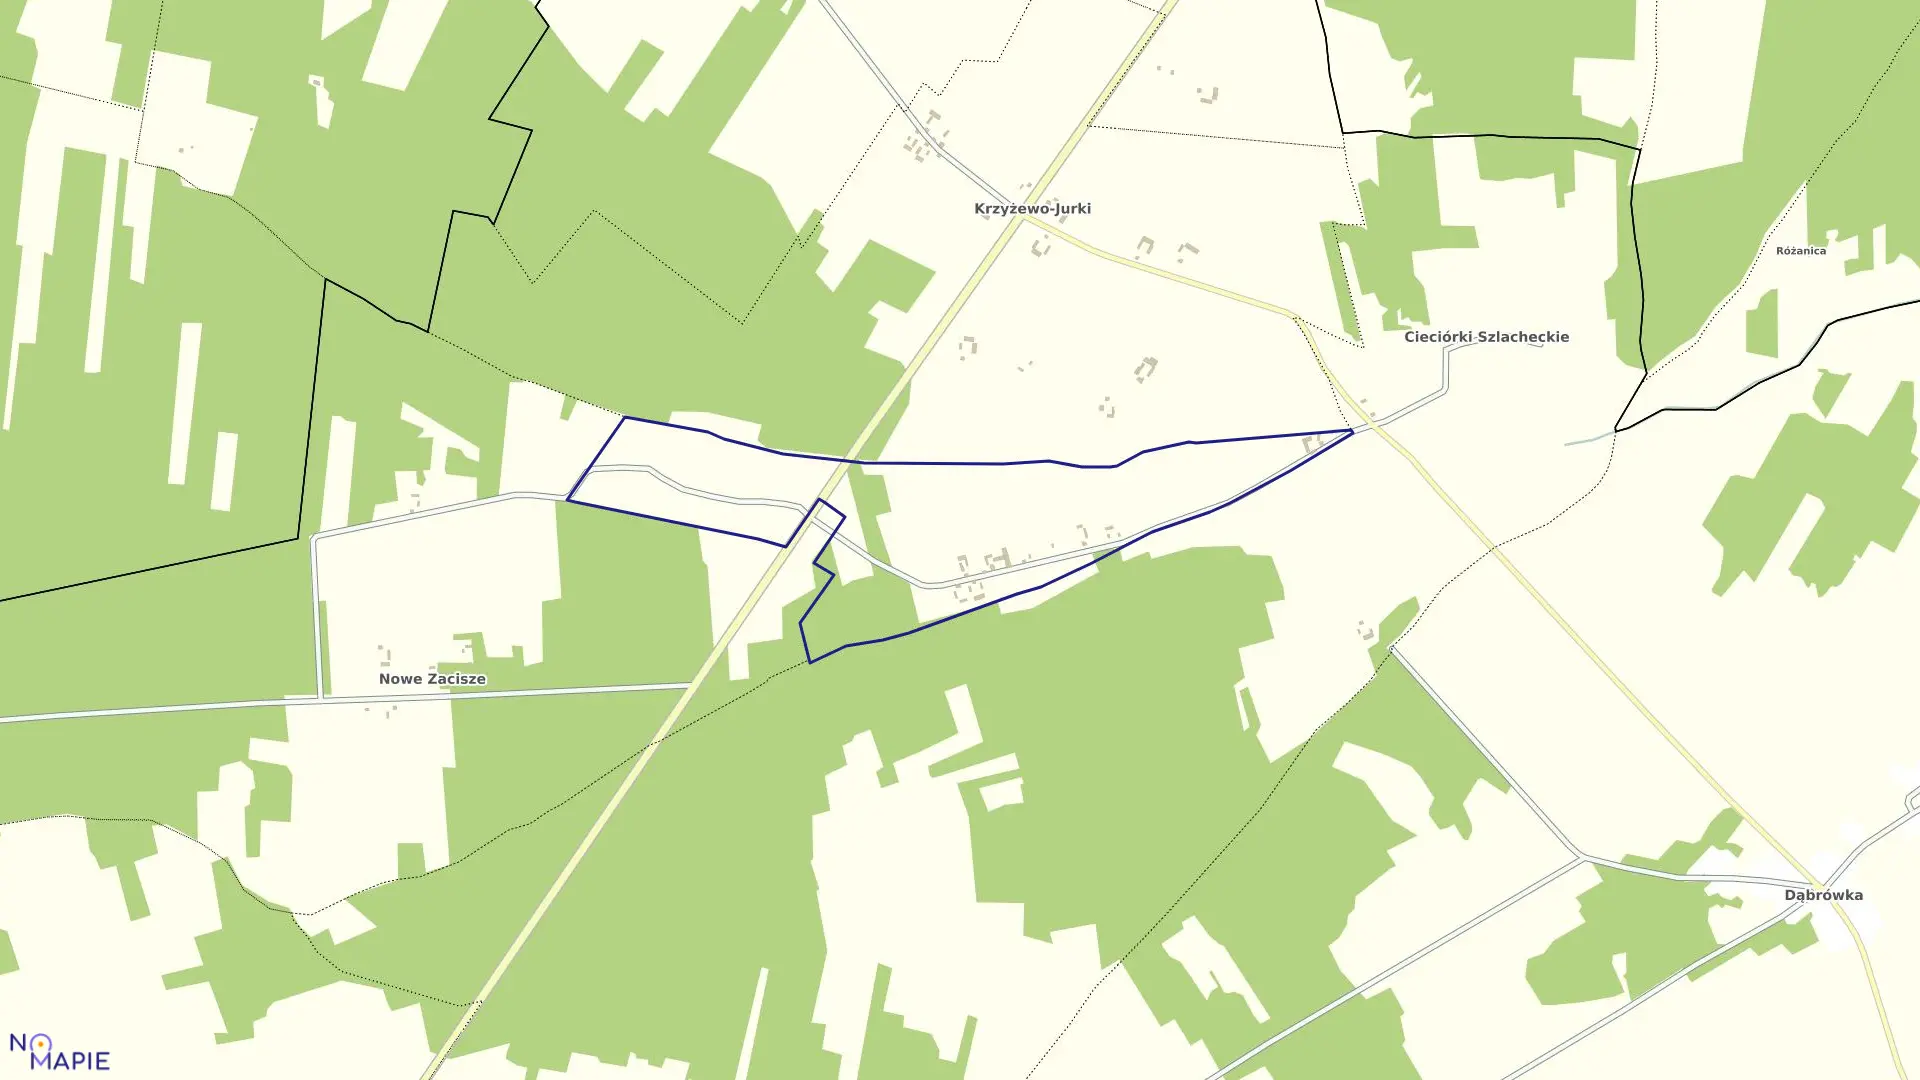 Mapa obrębu CIECIÓRKI WŁOŚCIAŃSKIE w gminie Czerwonka